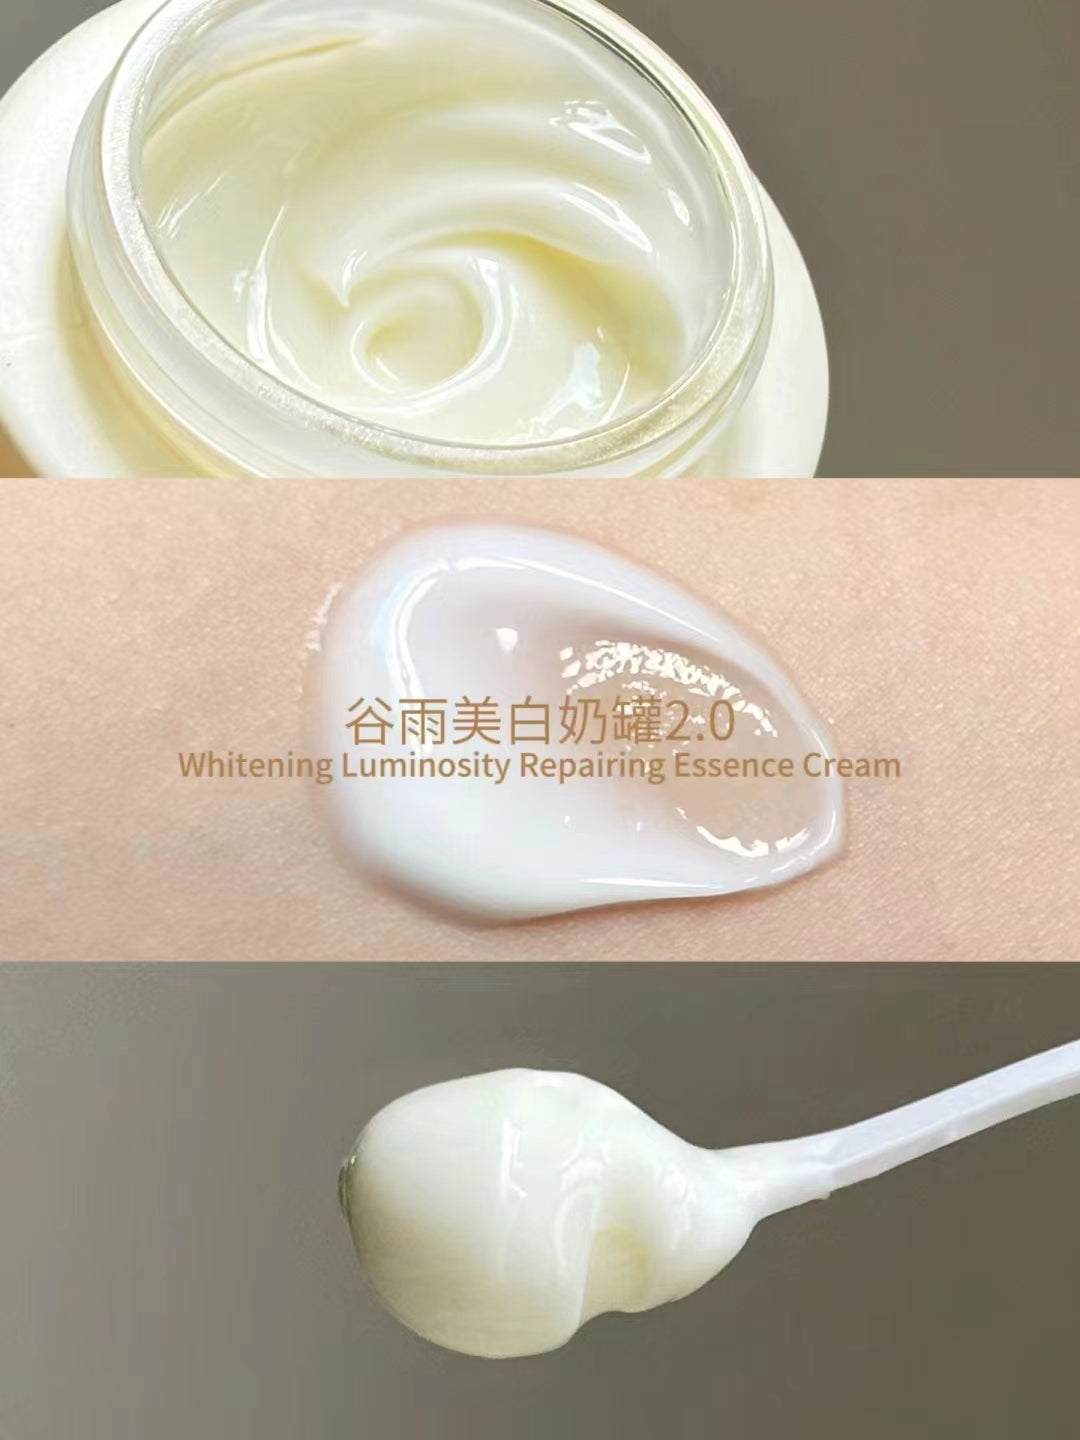 GUYU Whitening Luminosity Repairing Essence Cream 30g/50g 谷雨光感美白修护精华霜